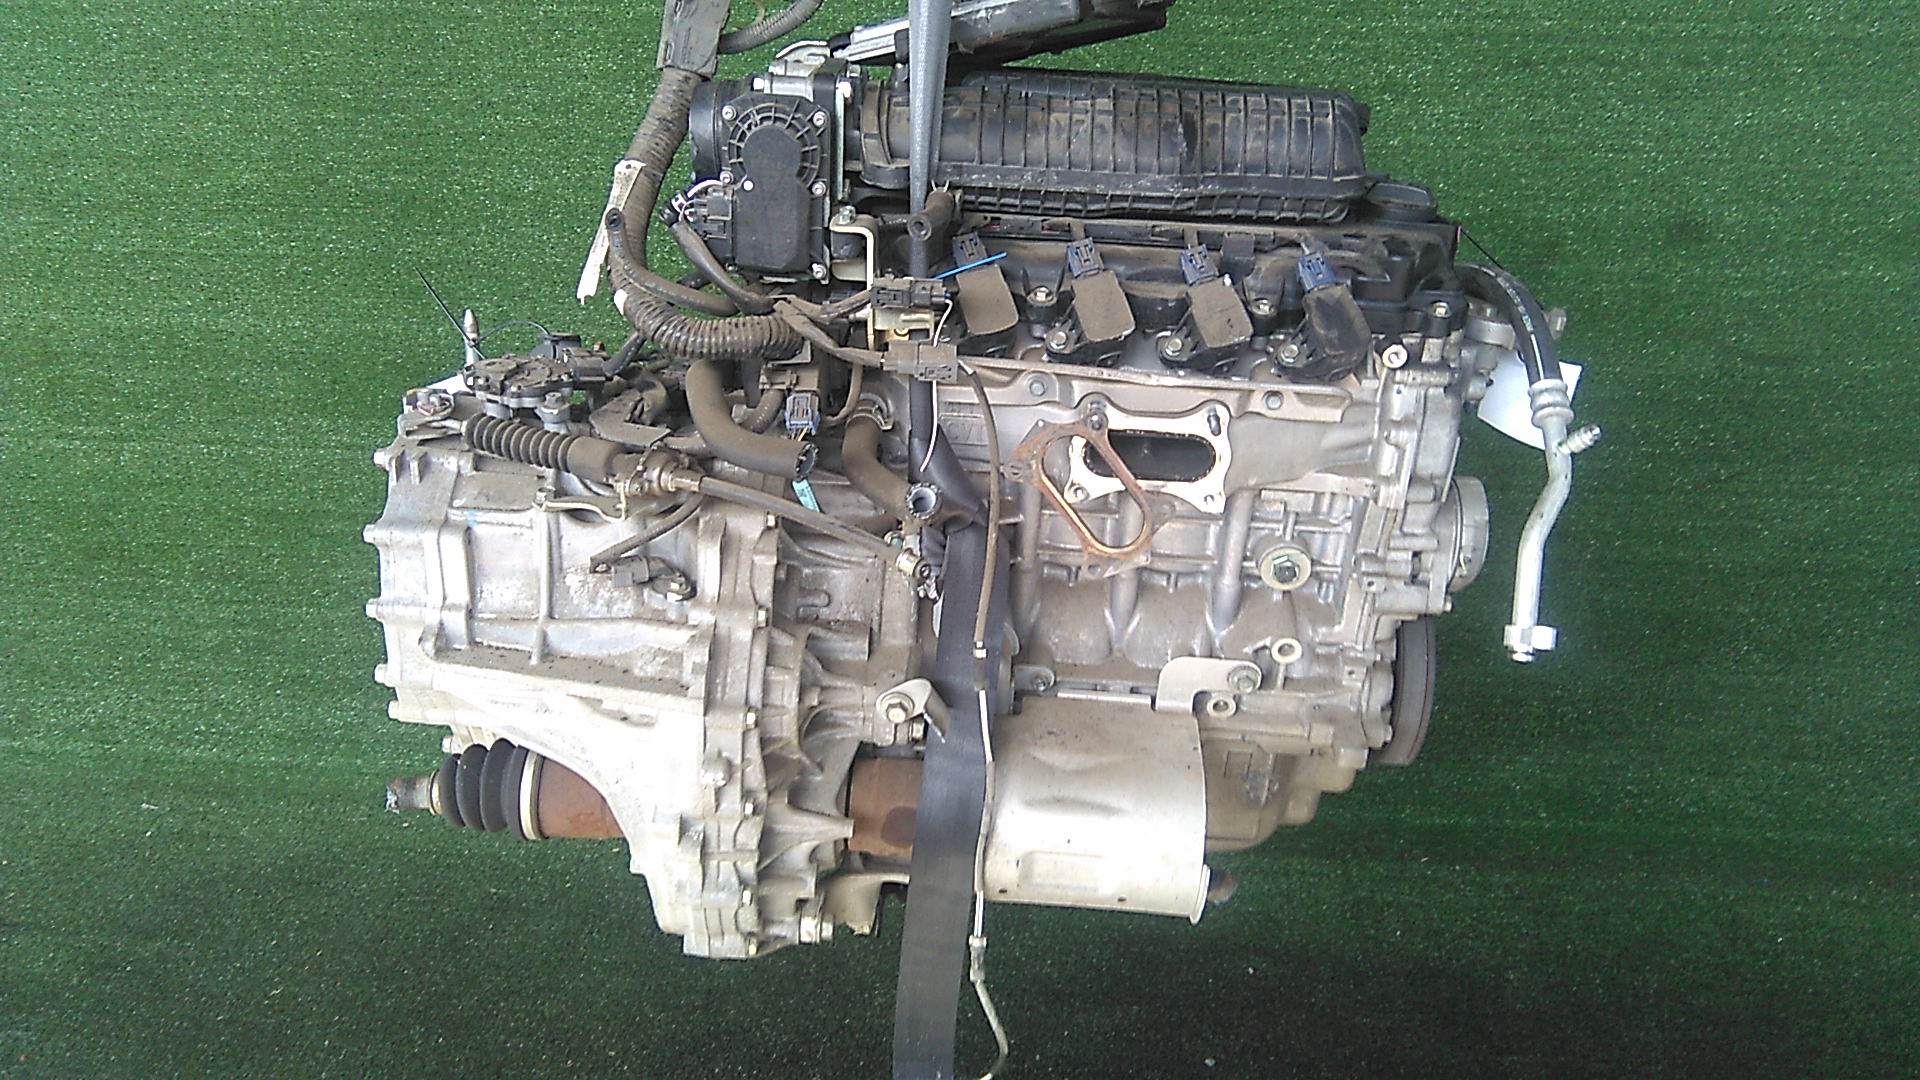 Технические характеристики мотора Honda L13A 1.3 литра